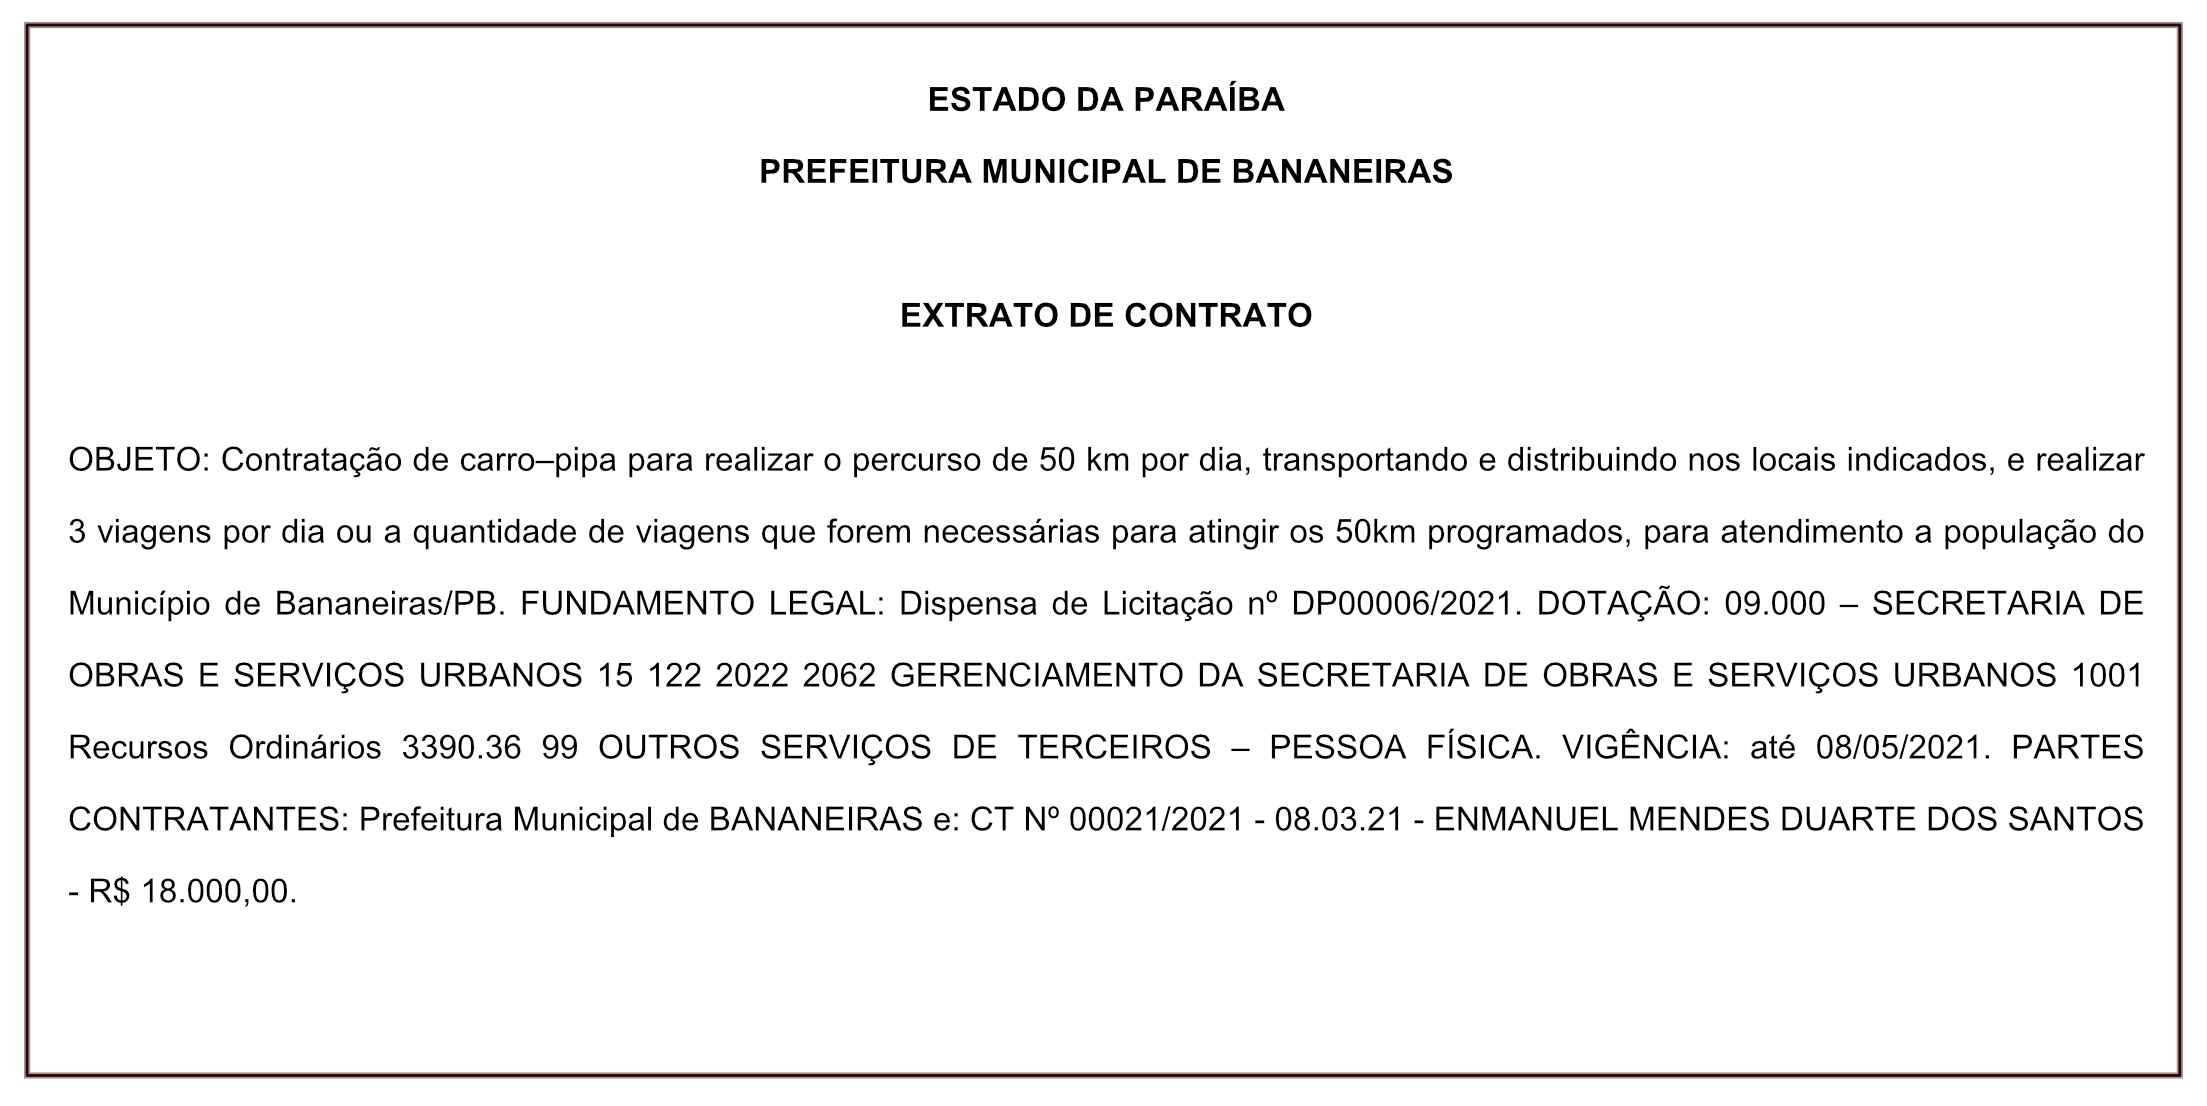 PREFEITURA MUNICIPAL DE BANANEIRAS – EXTRATO DE CONTRATO